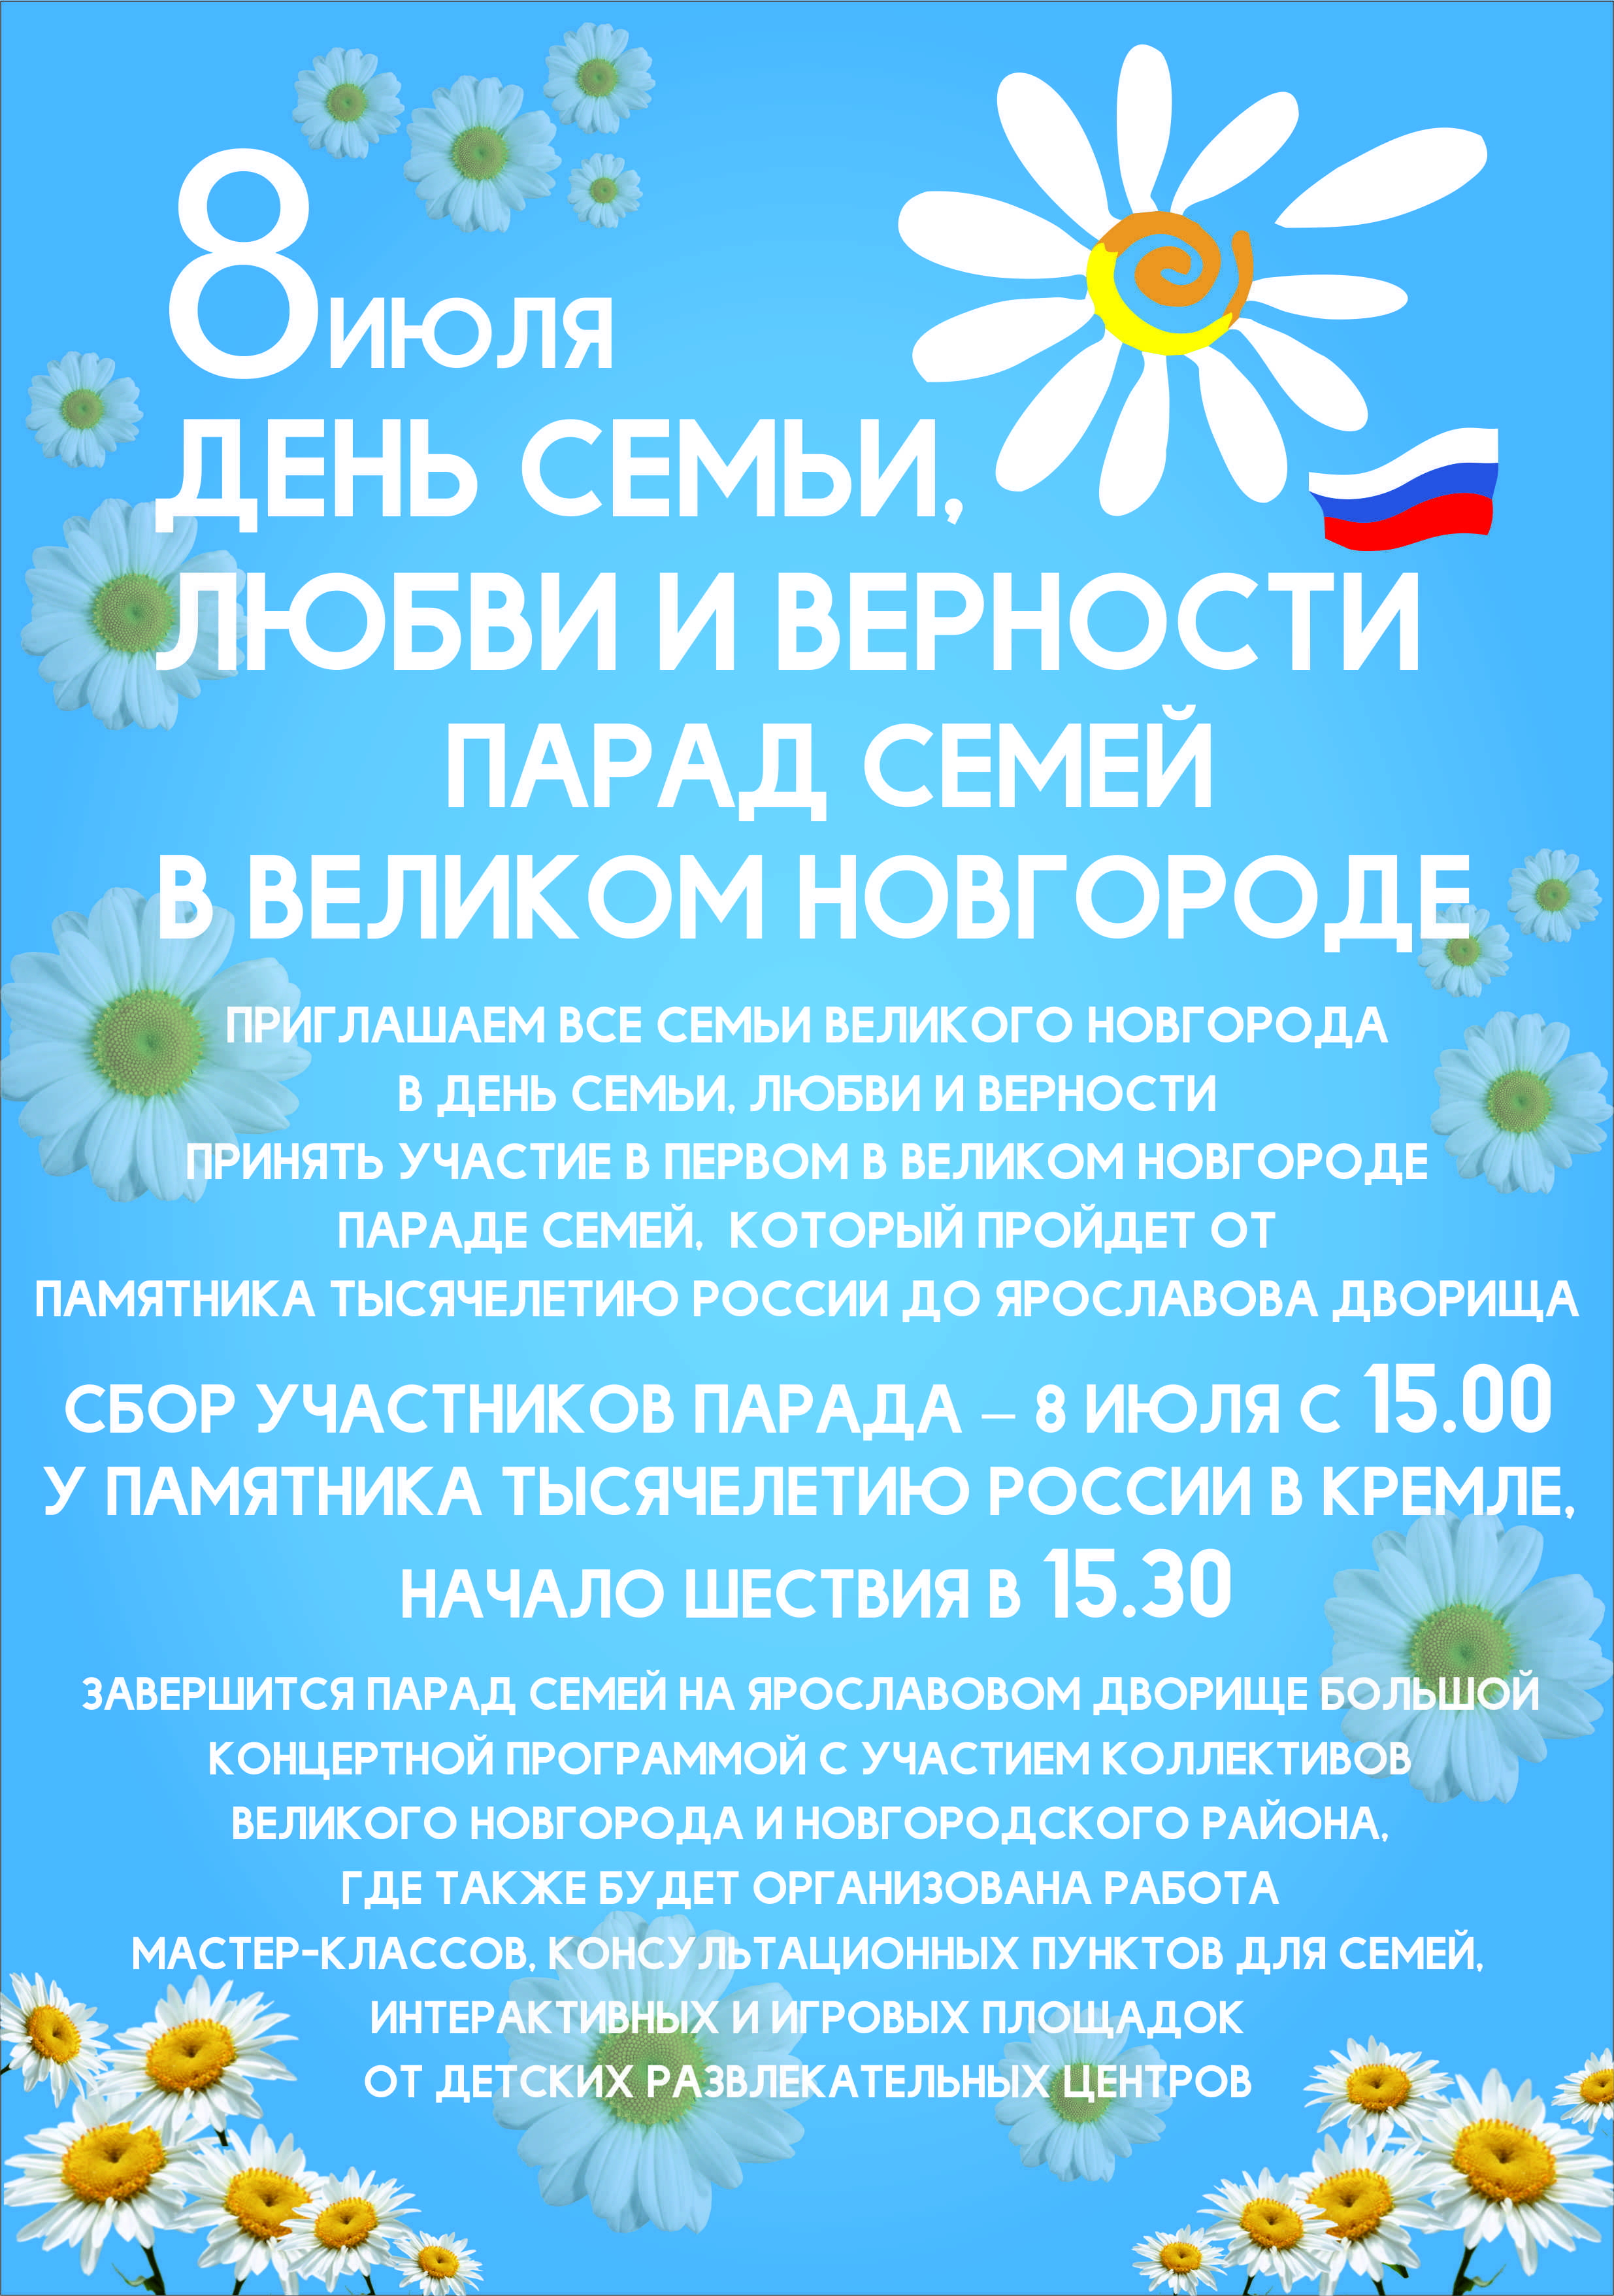 8 июля впервые в Великом Новгороде пройдет праздничное шествие «Парад семьи»